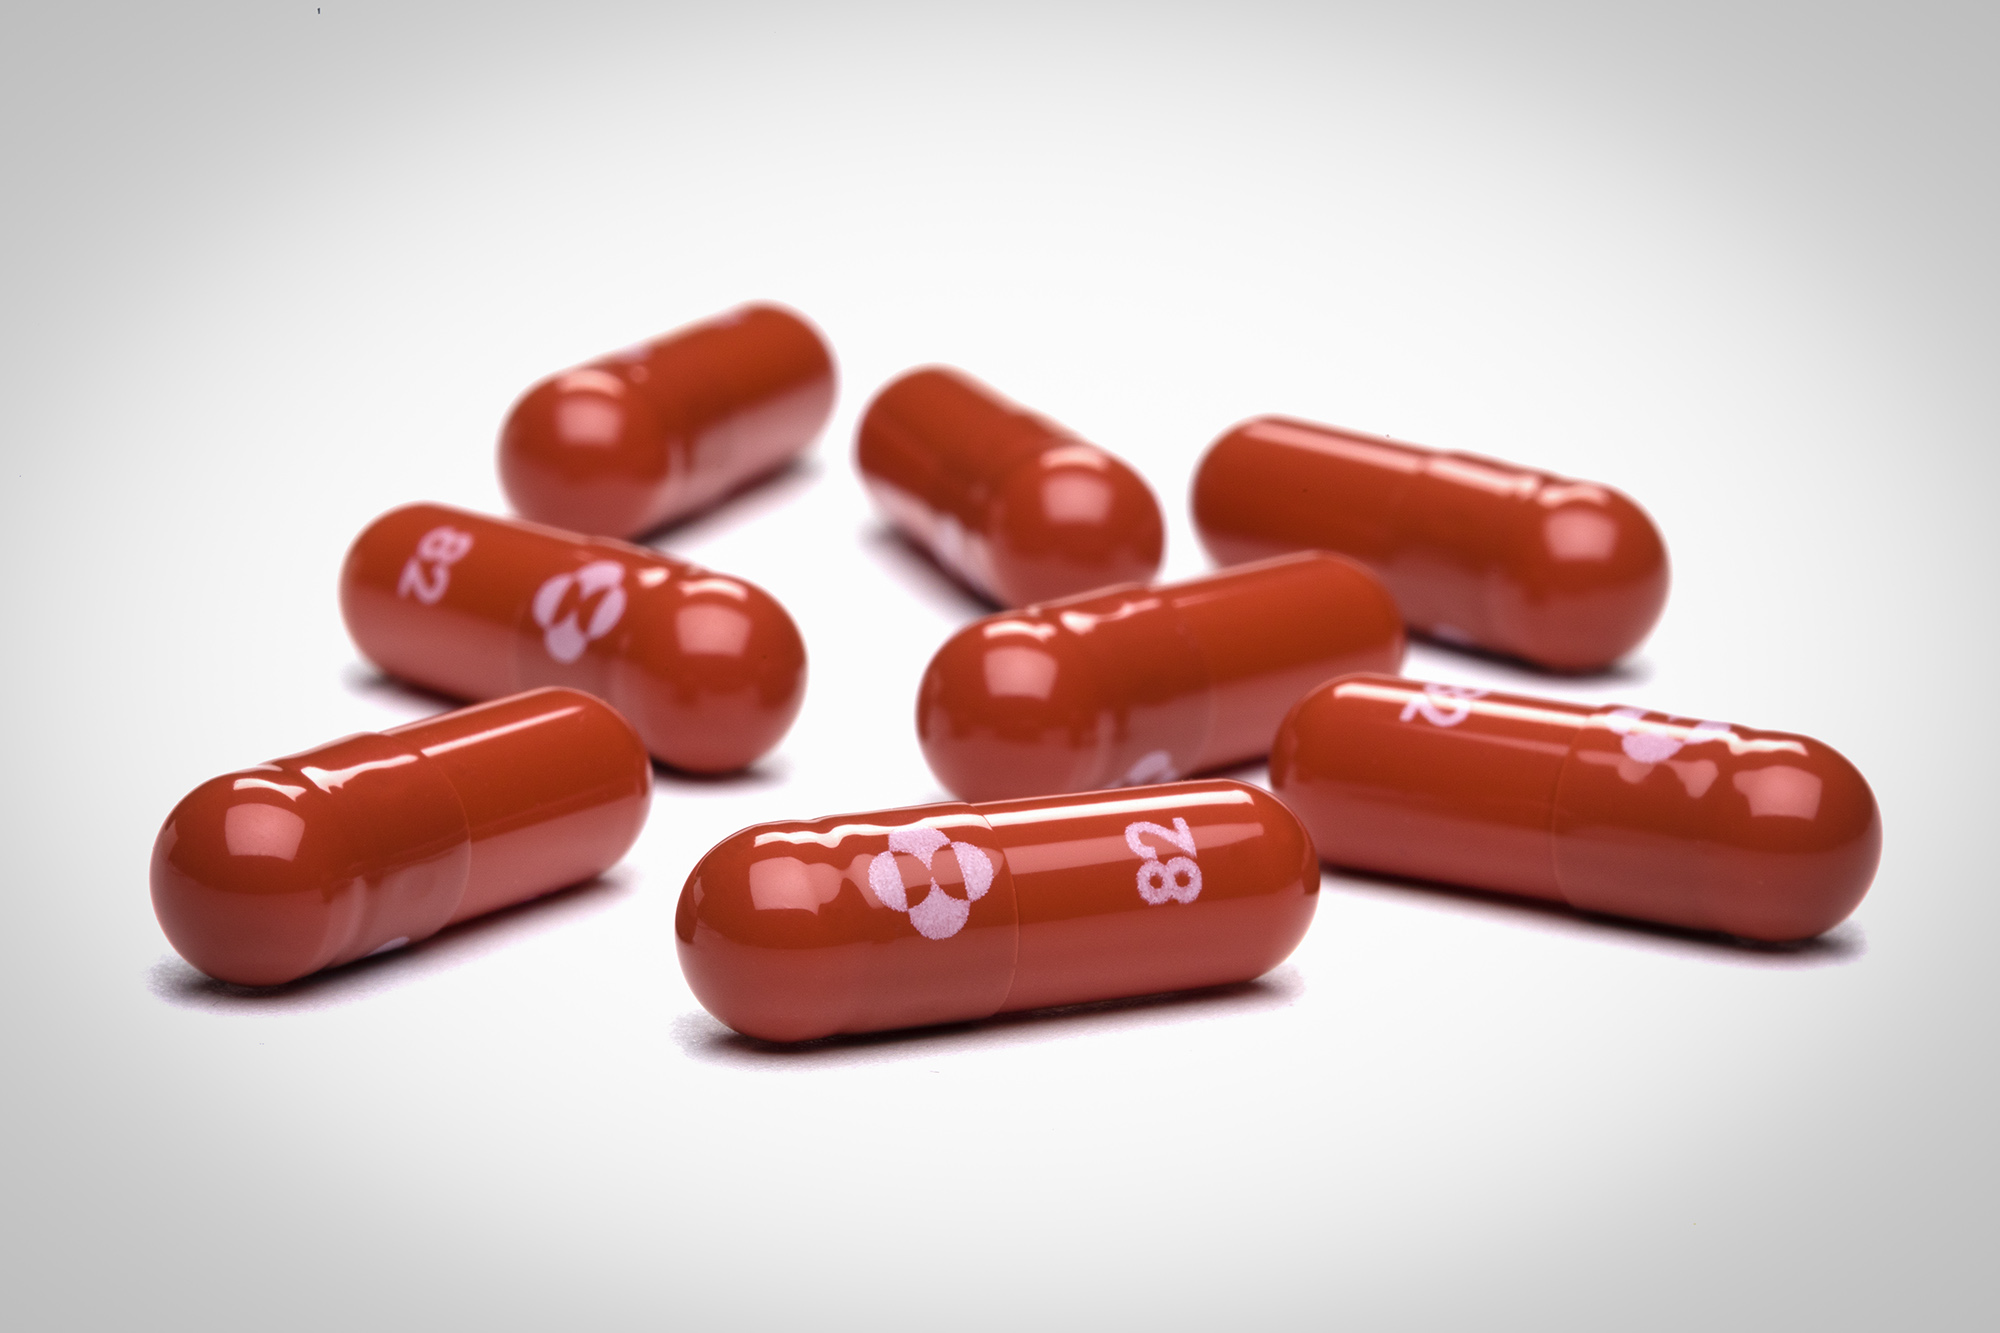 Red oblong Molnupiravir pills 